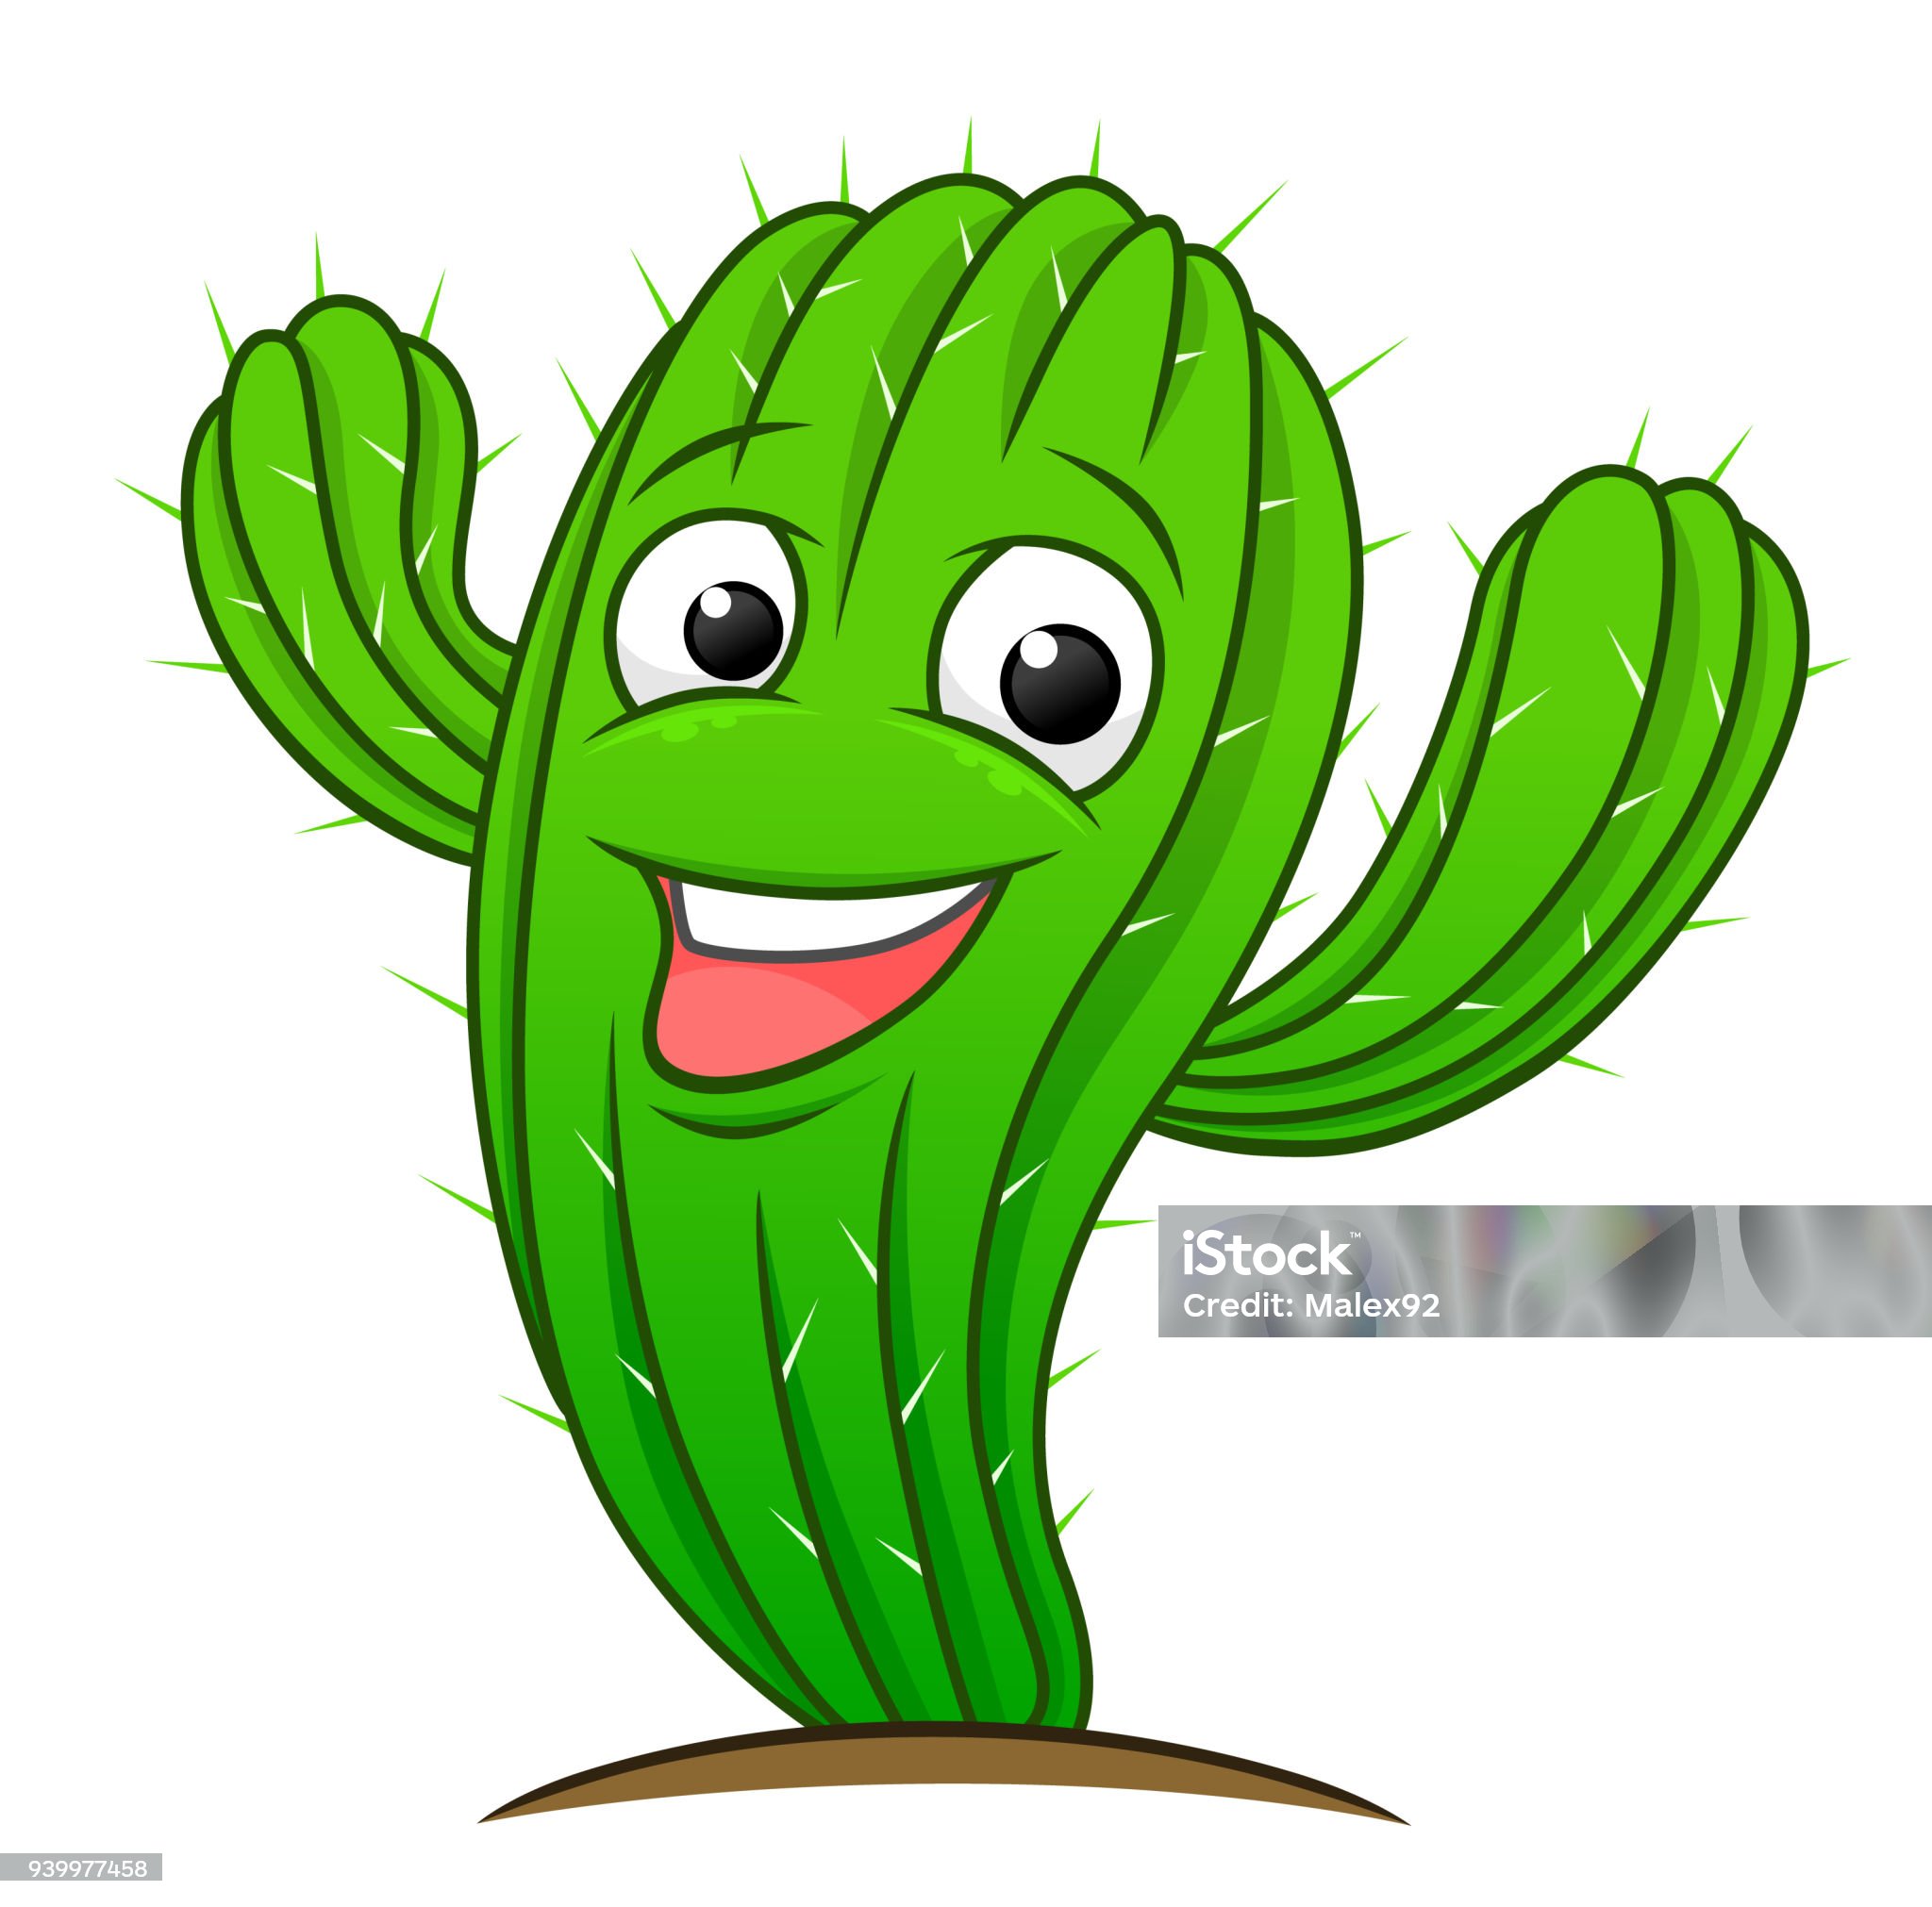 cartoon-lachende-cactus.jpg